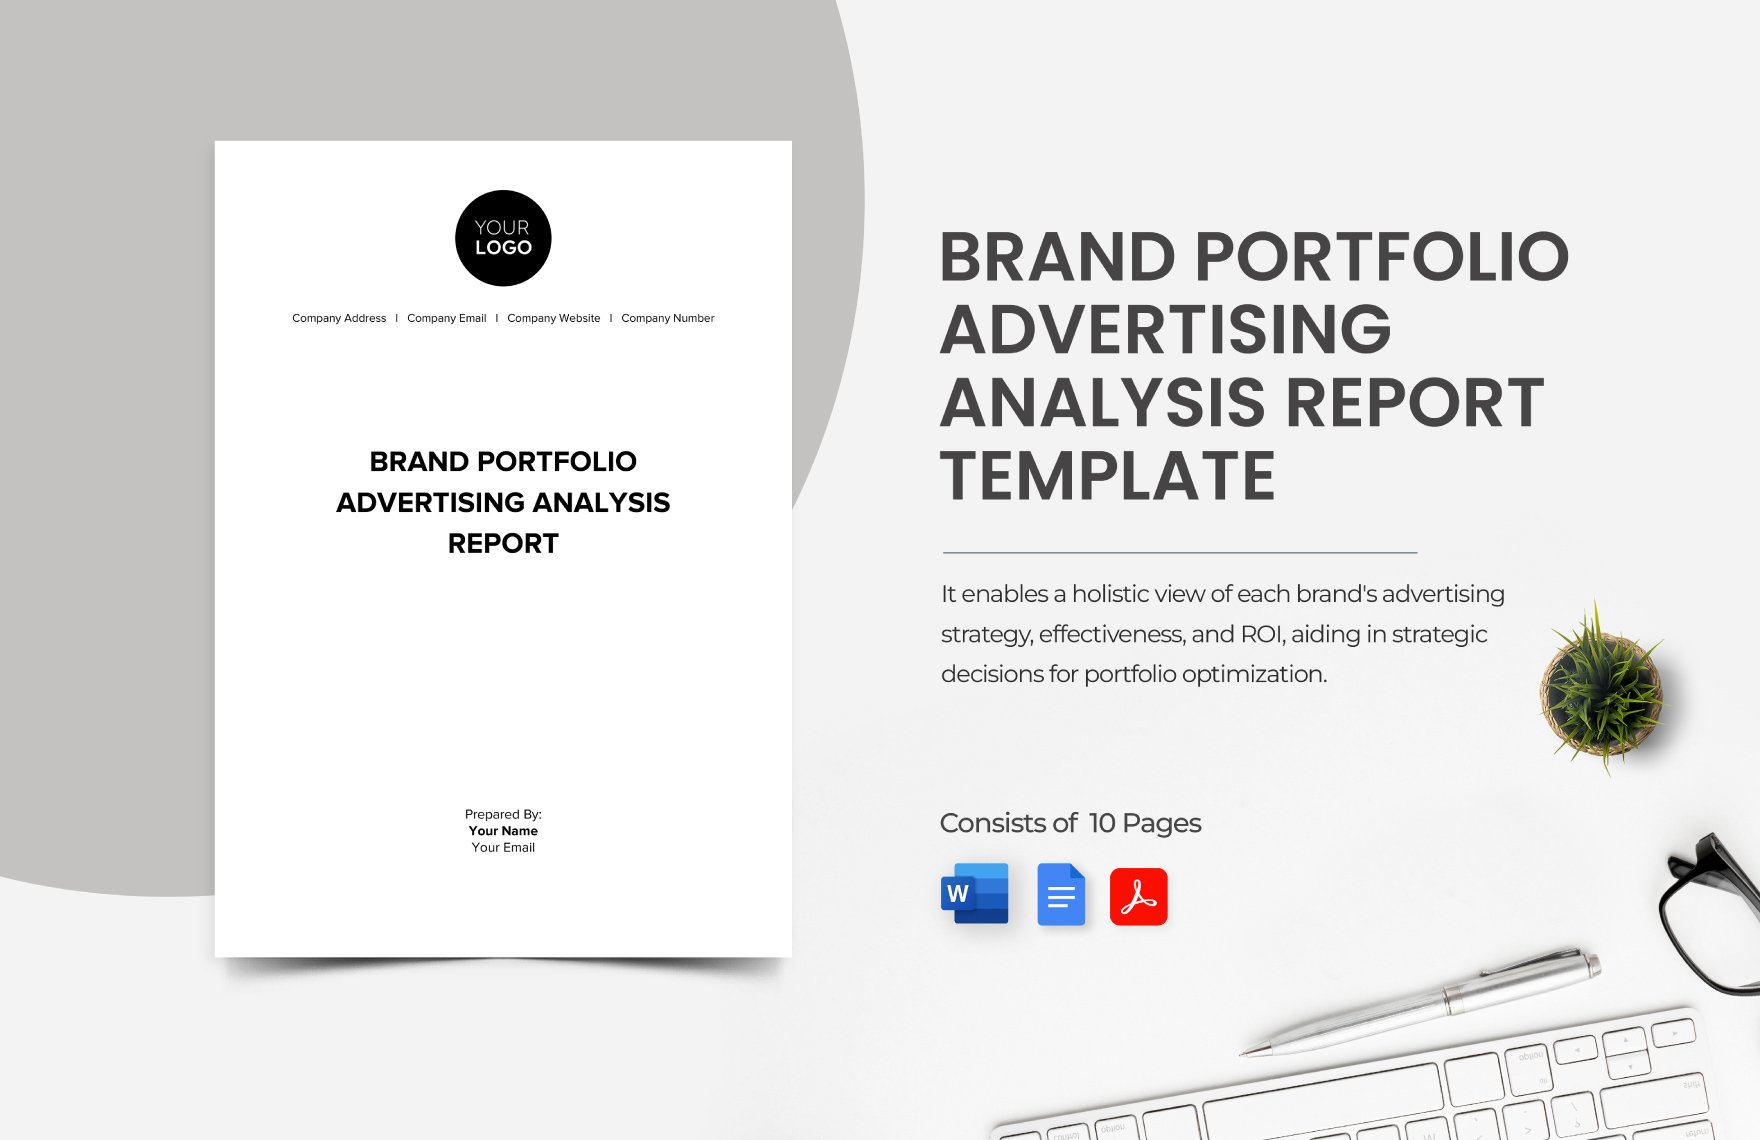 Brand Portfolio Advertising Analysis Report Template